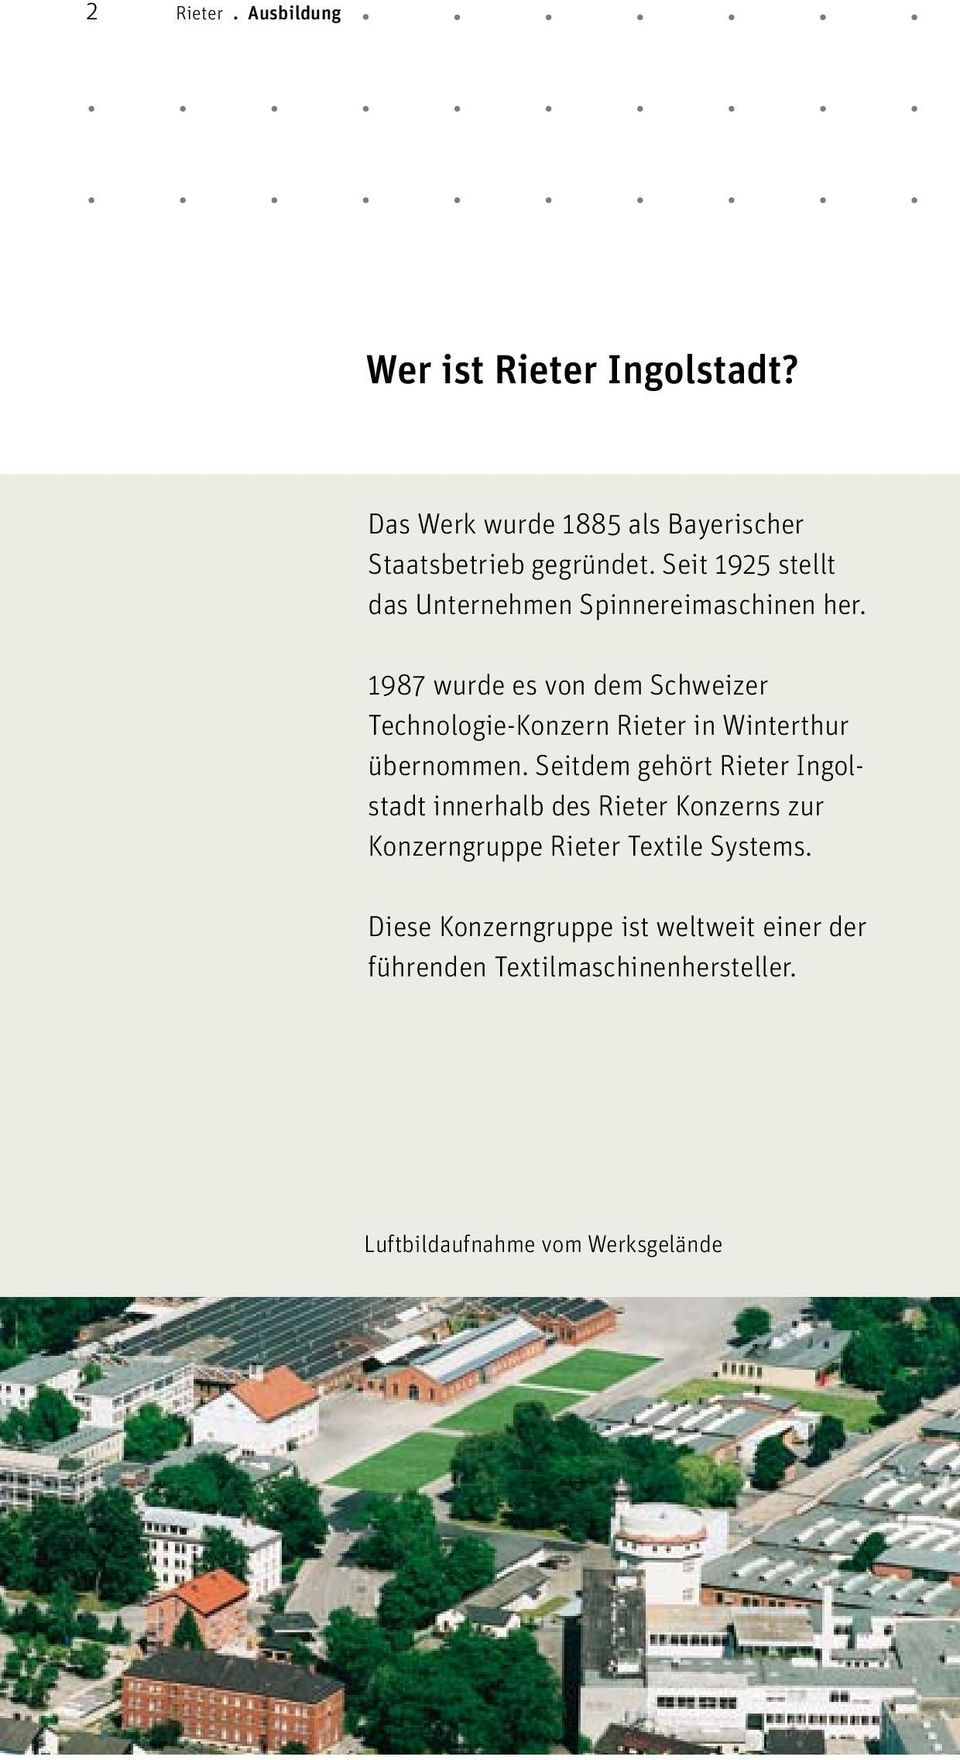 1987 wurde es von dem Schweizer Technologie-Konzern Rieter in Winterthur übernommen.